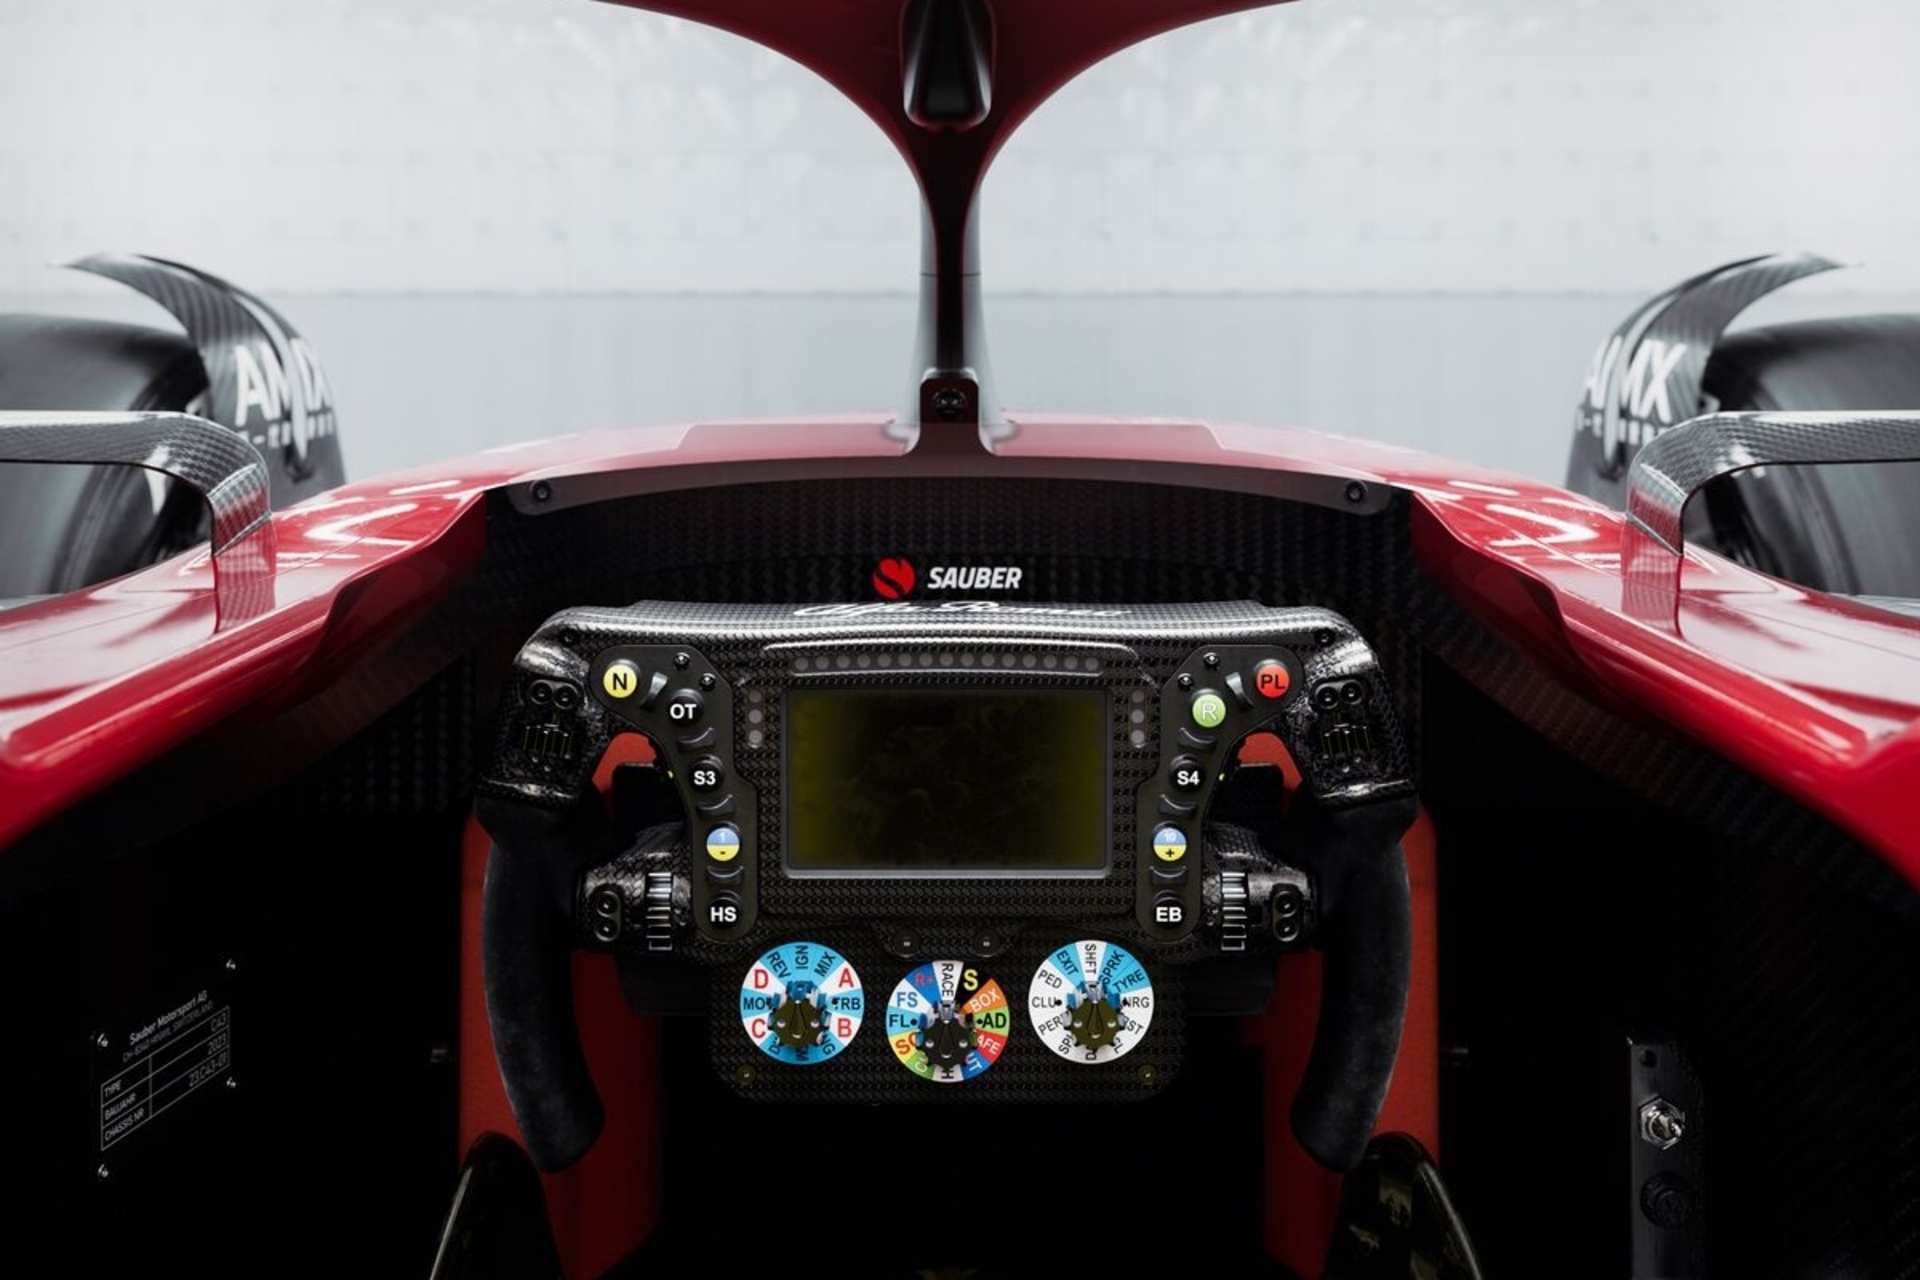 Kecerdasan Buatan: pengaturan teknis Alfa Romeo F1 Team Stake C43 telah direvisi oleh insinyur Perancis-Jerman Jan Monchaux